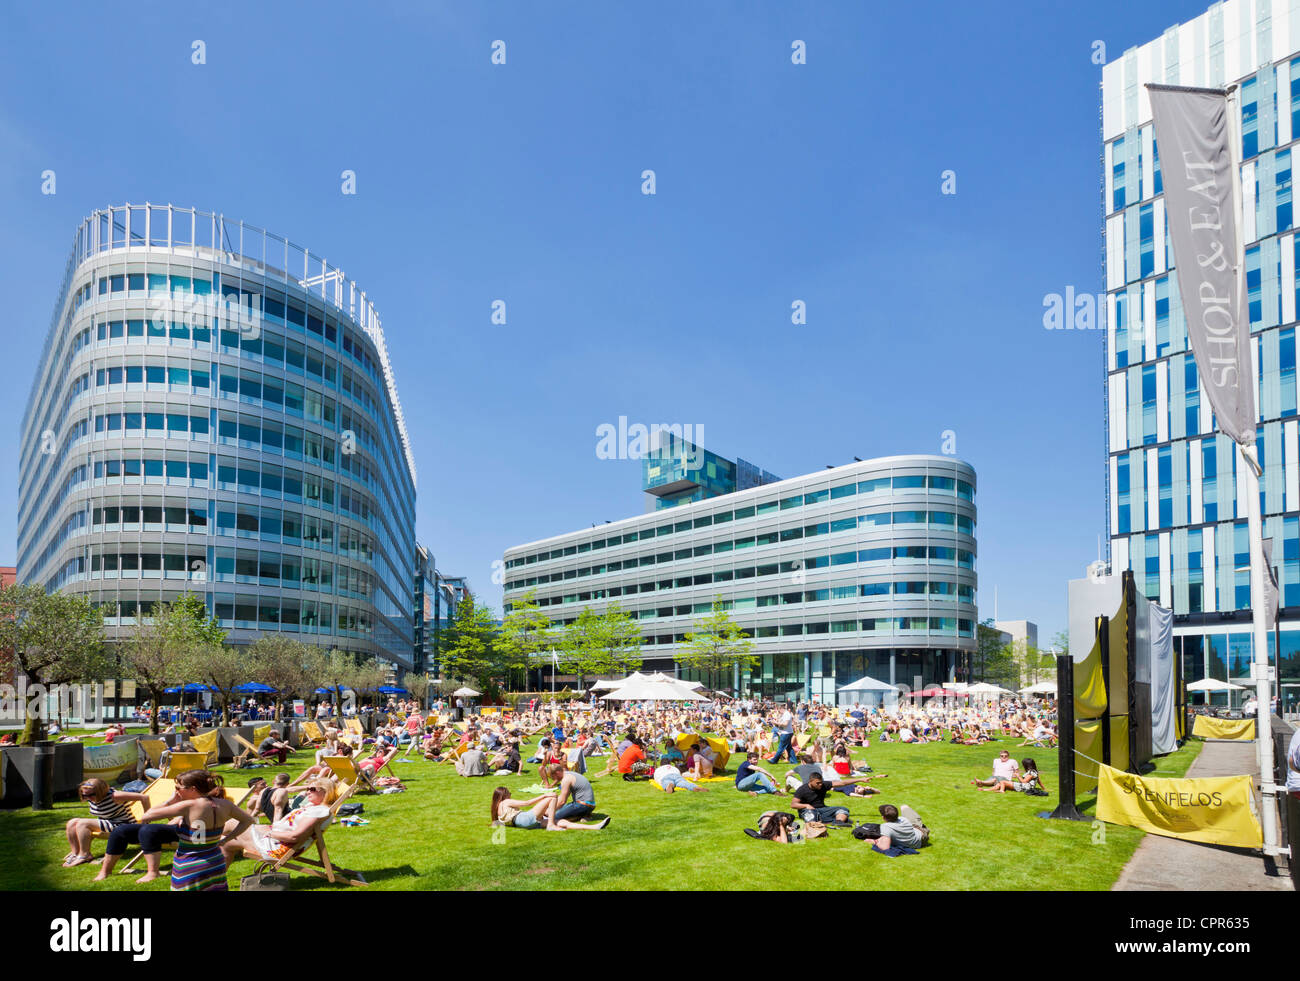 Les foules appréciant la chaleur et le soleil dans le centre-ville Spinningfields Greater Manchester England UK GB EU Europe Banque D'Images